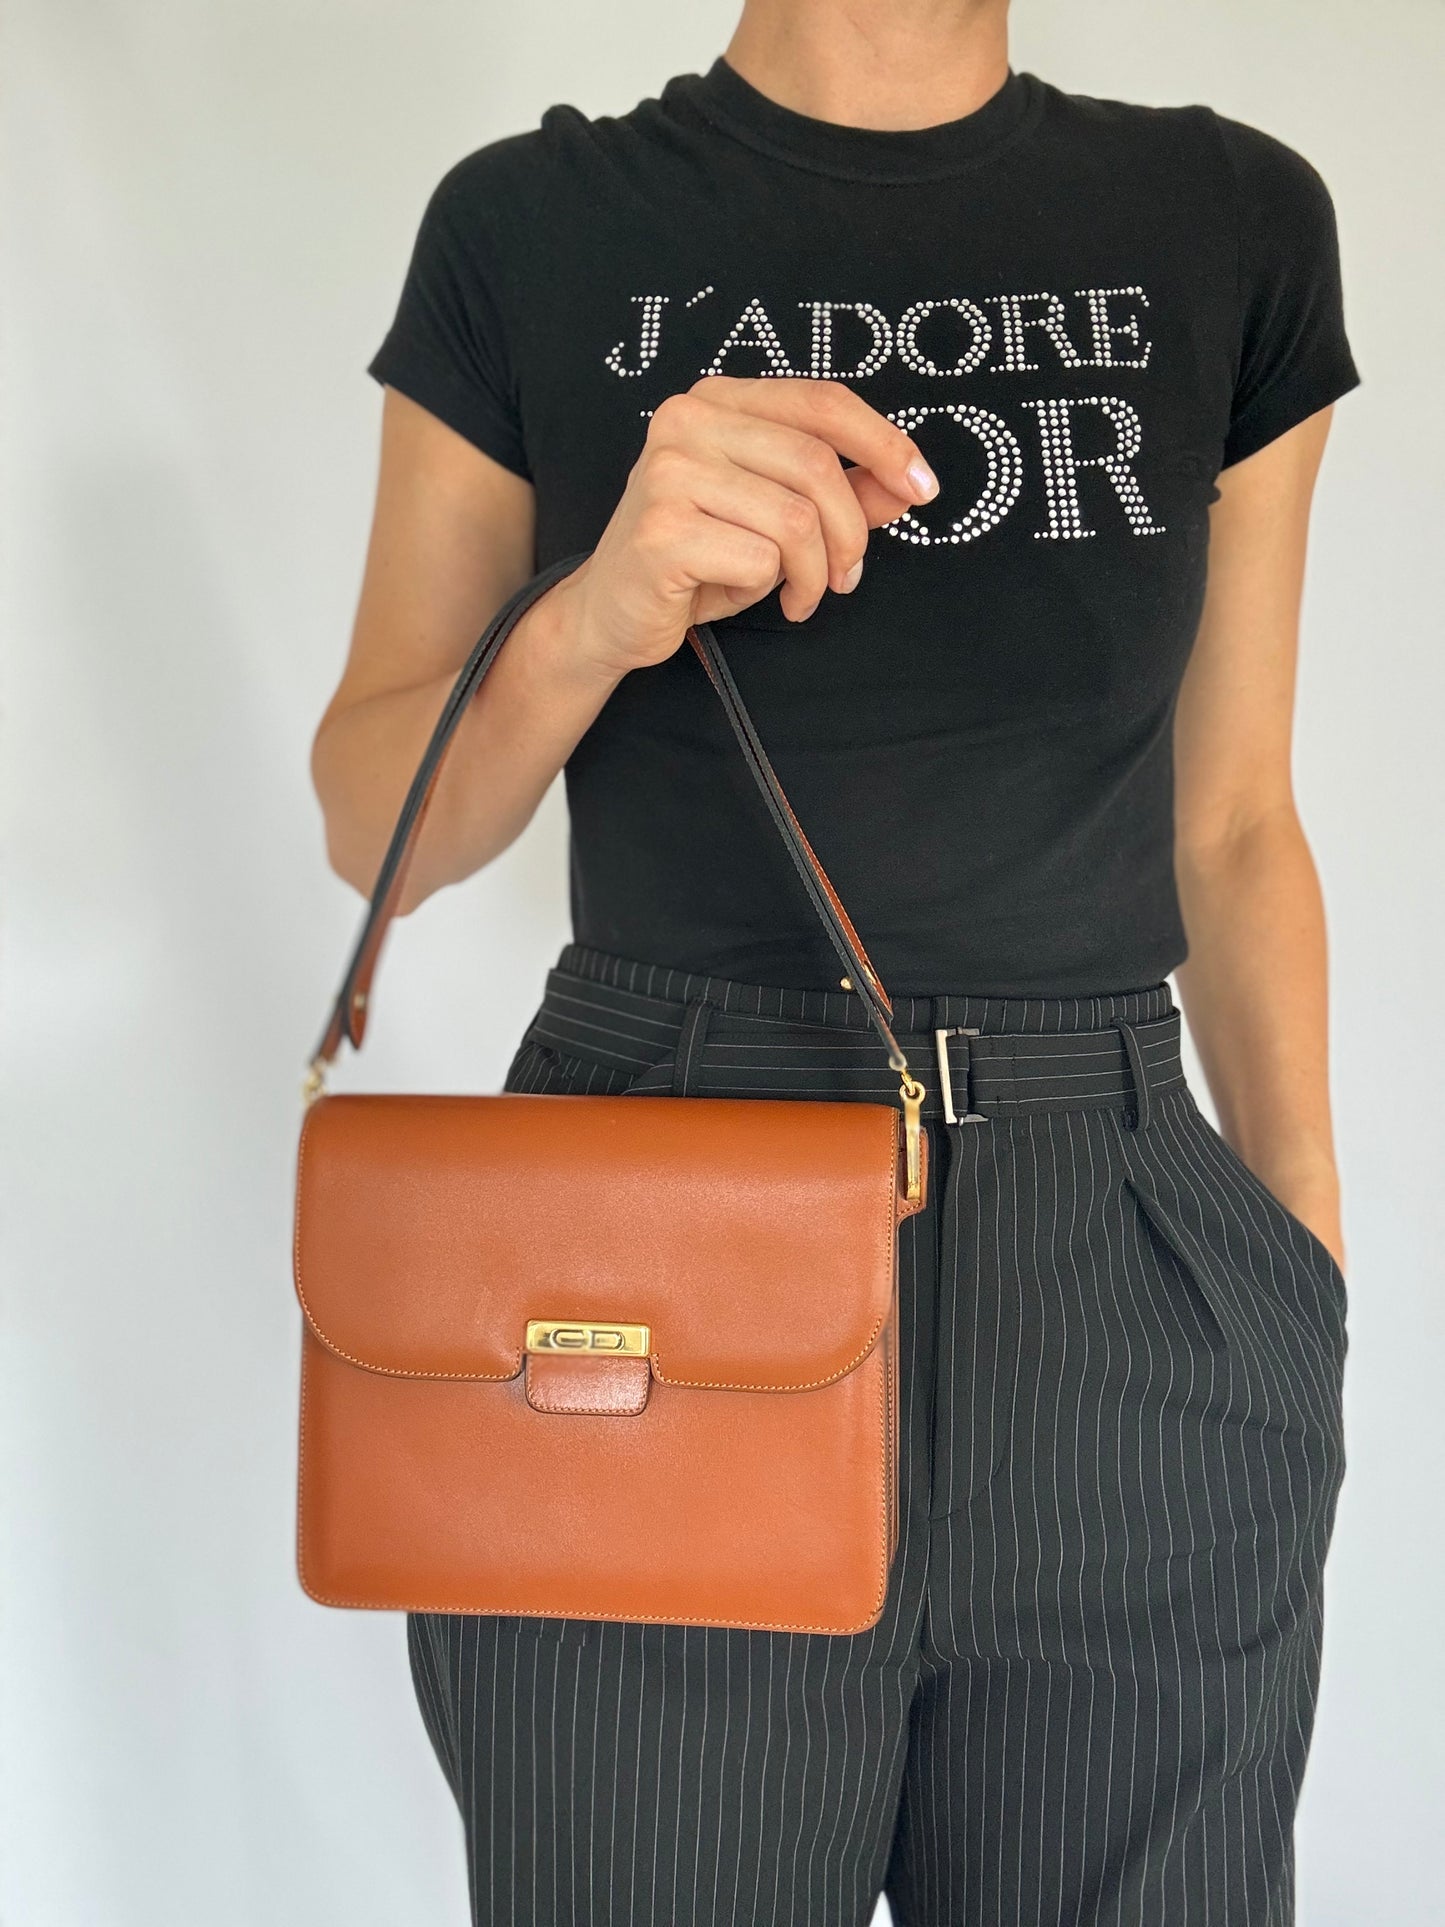 Christian Dior Vintage Brown Bag leather 3 Ways Shoulder Crossbody Handbag Bag Made in France